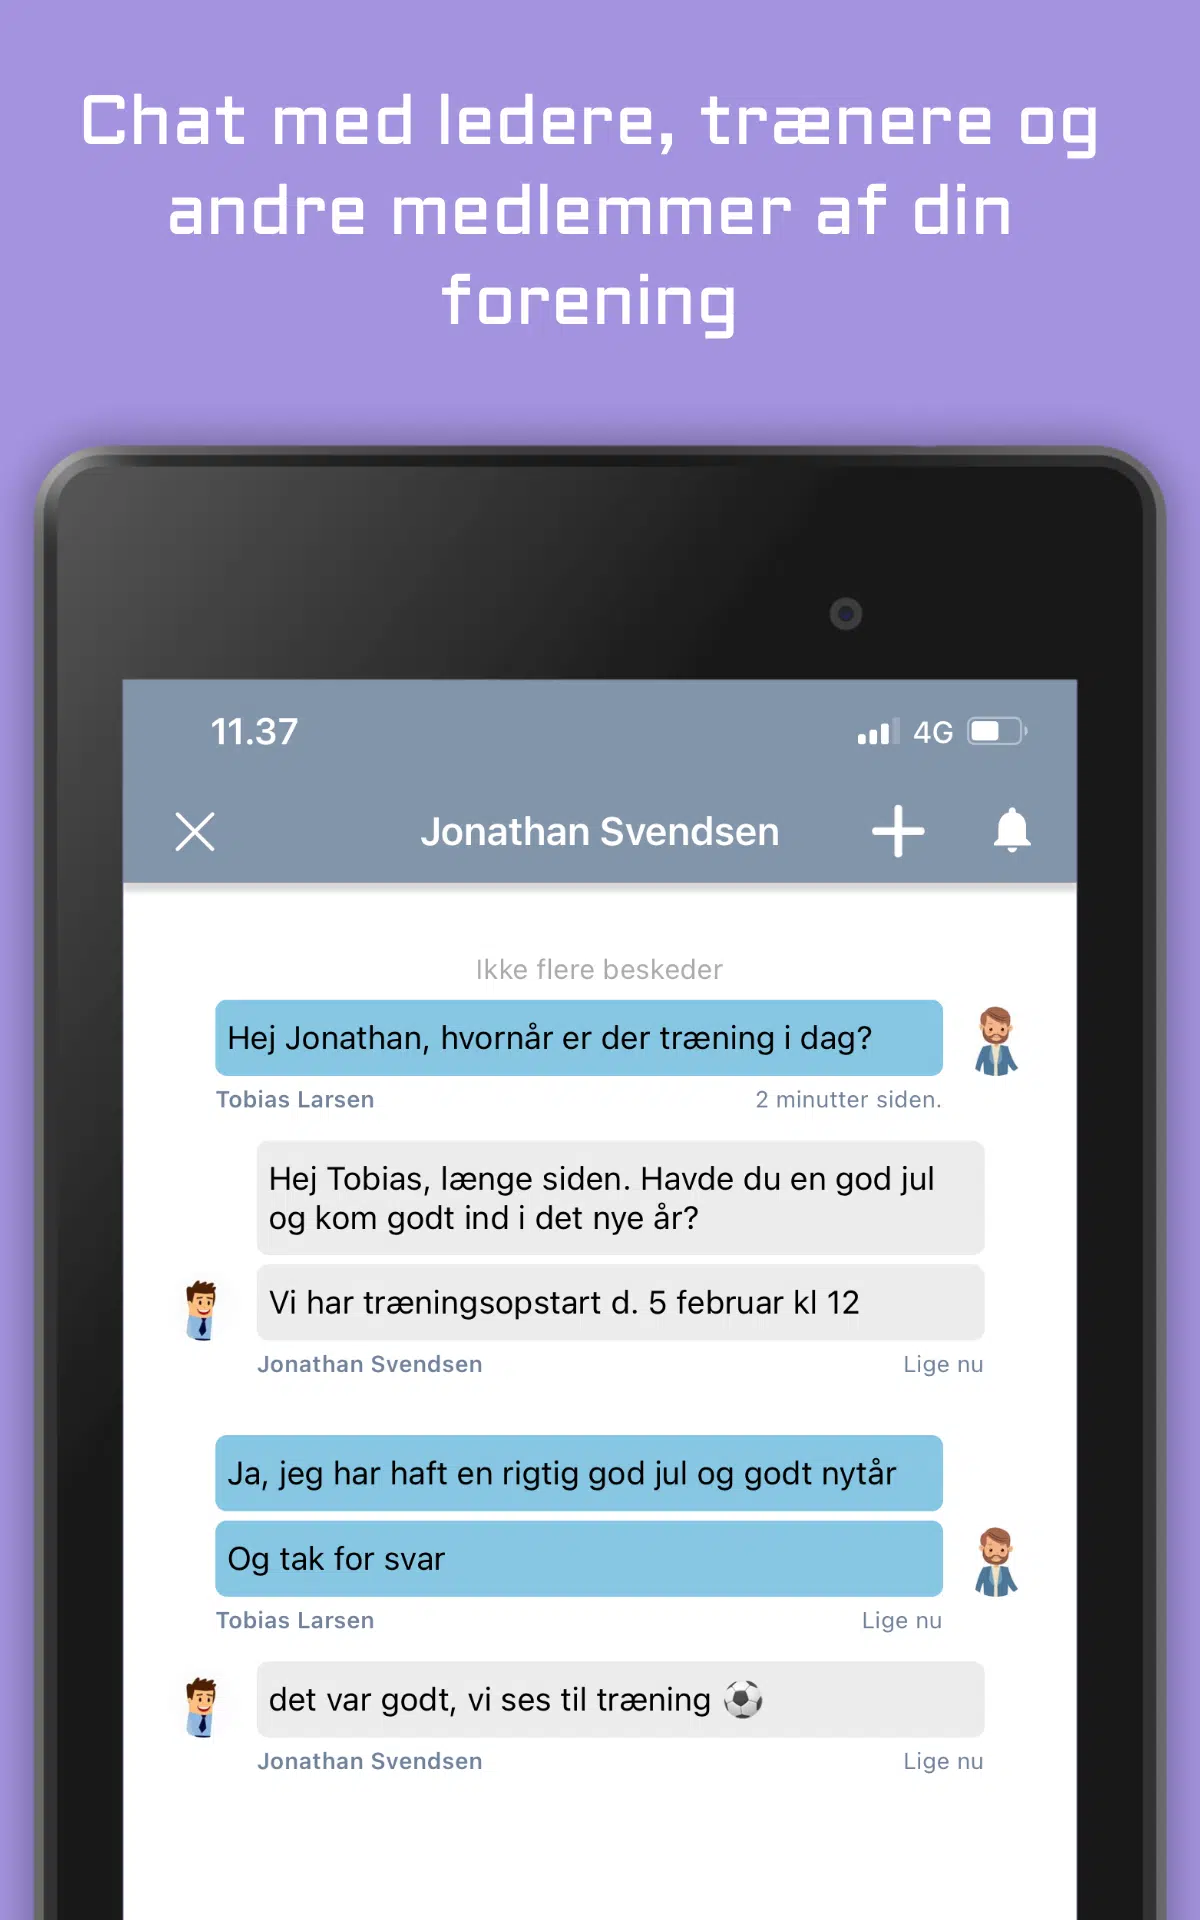 Billede der viser MinForening app, som Onlime samarbejder med. Her vises chatfunktionen mellem medlemmer..